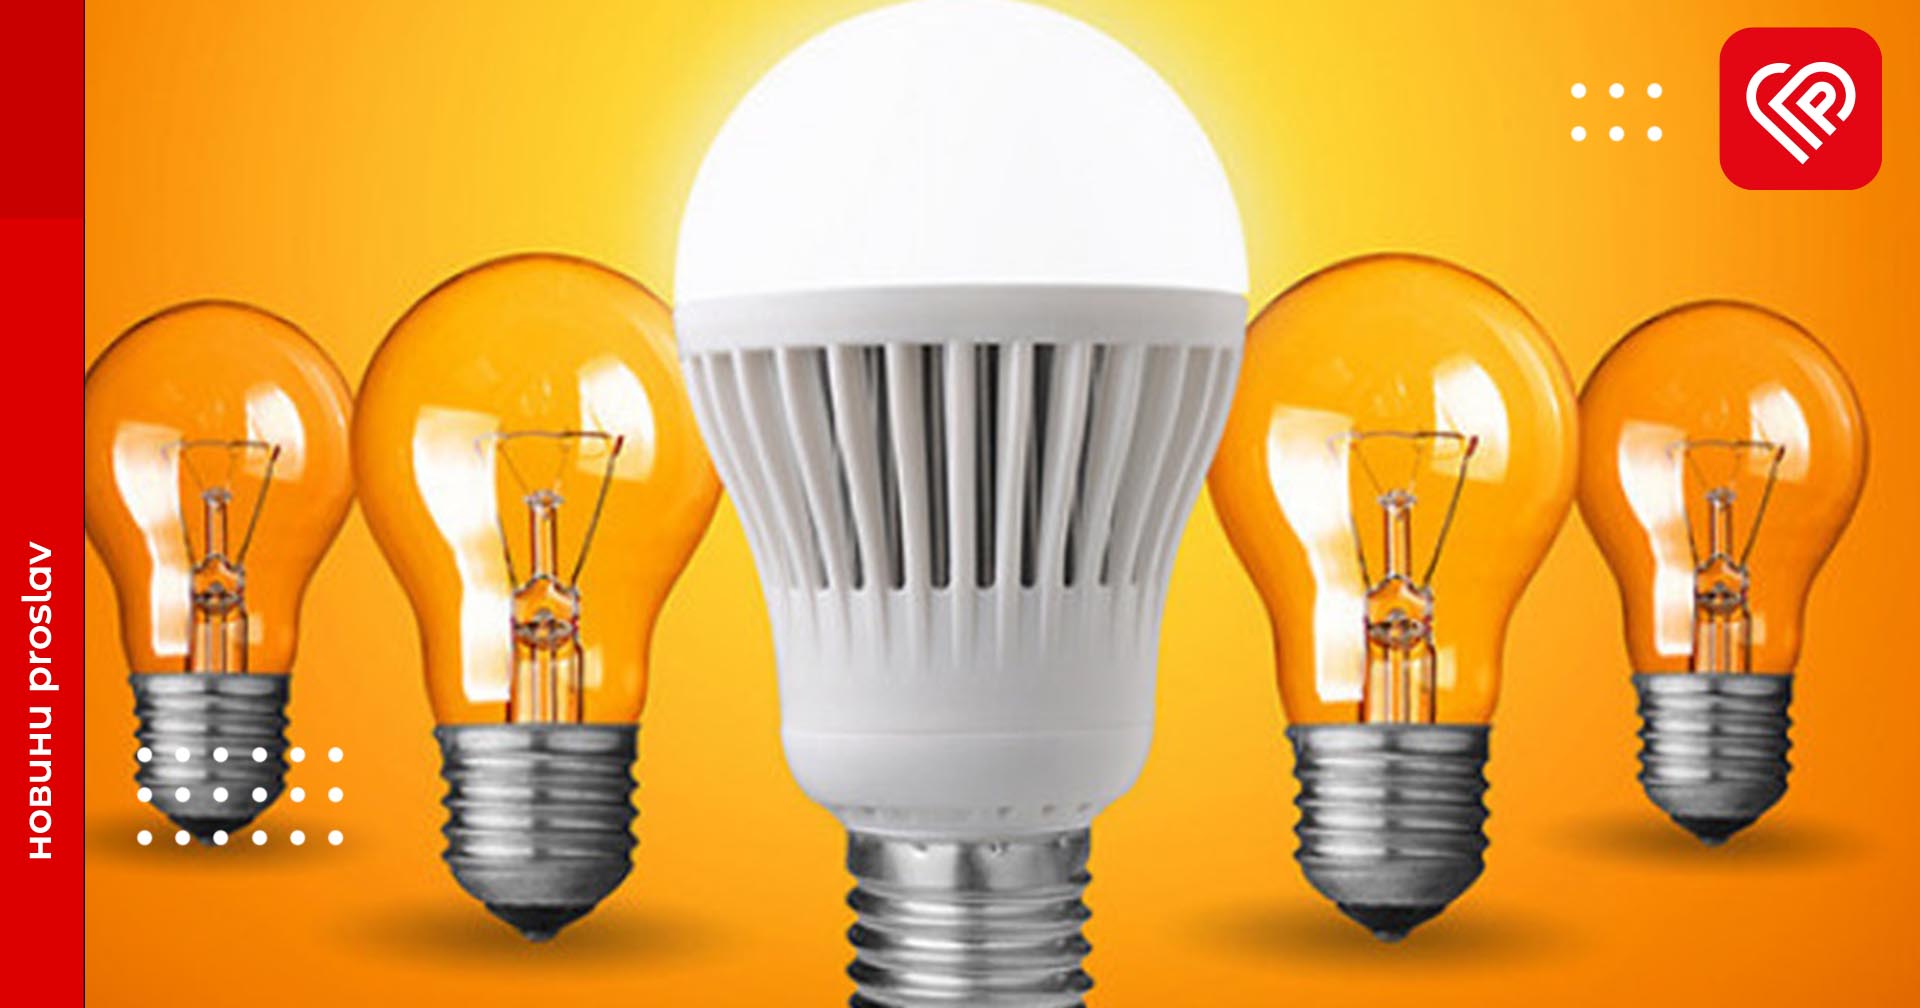 Як подати заяву про обмін звичайних лампочок на енергоощадні LED-лампи в Дії – відеоінструкція